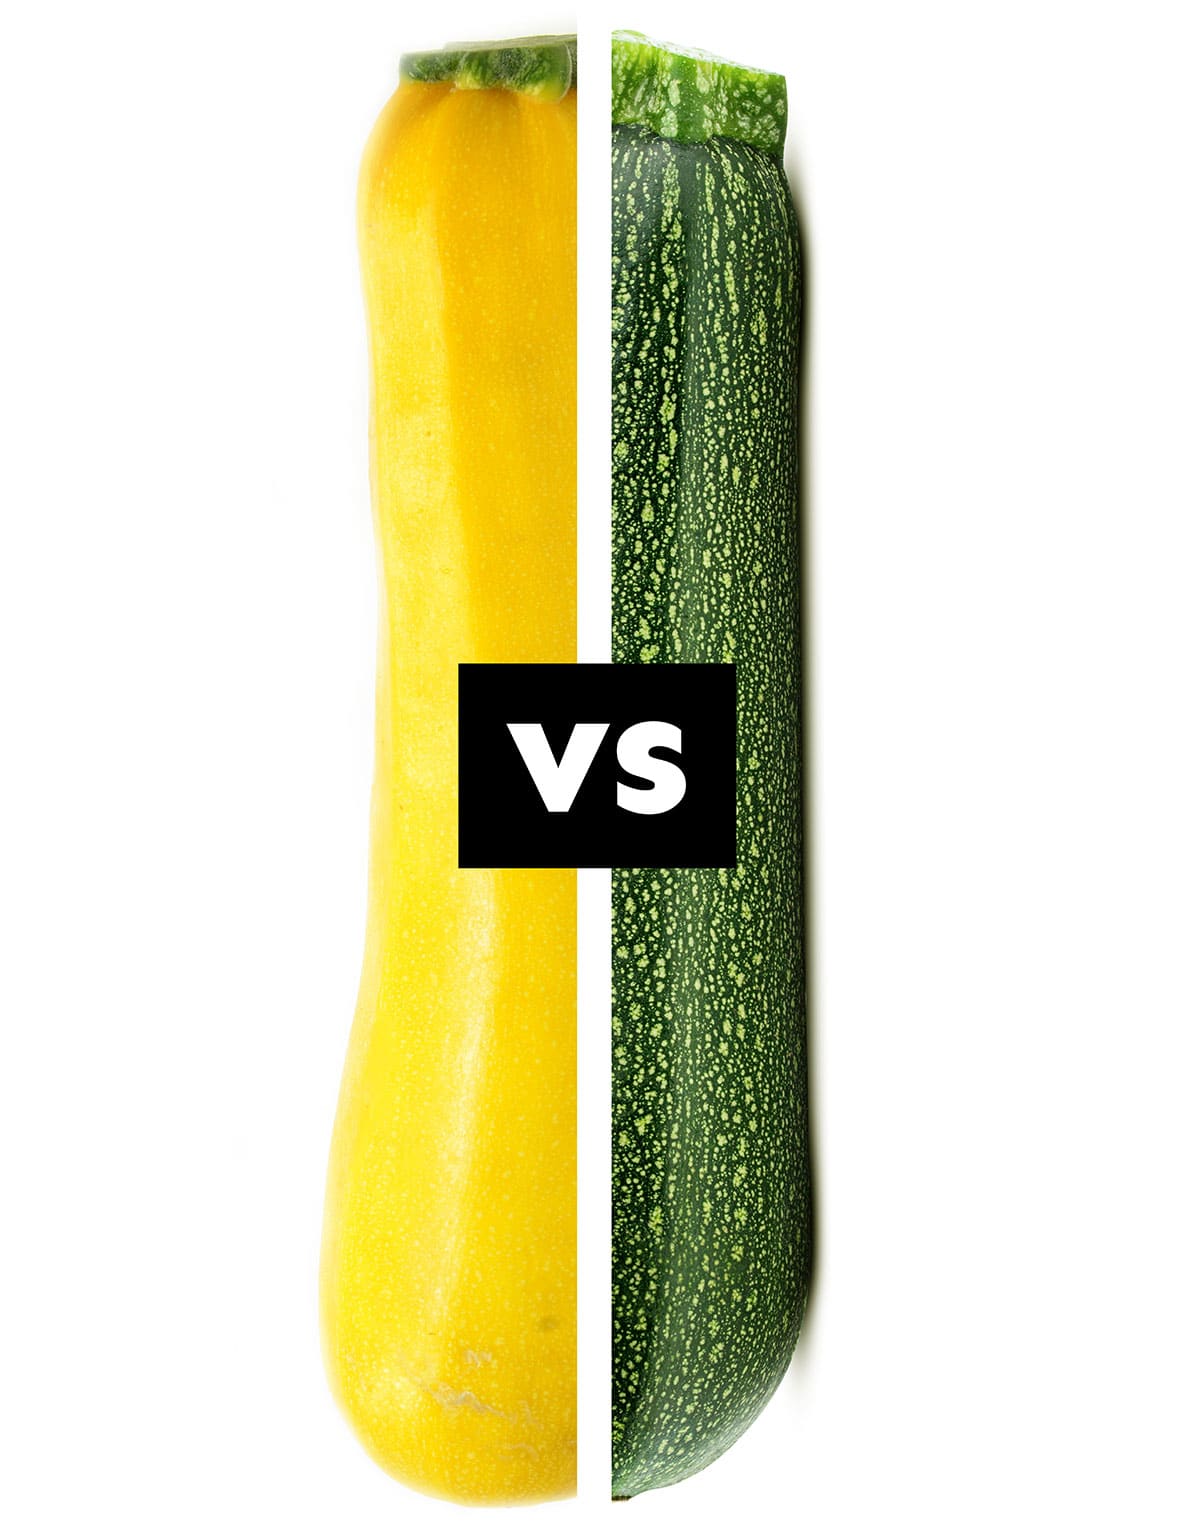 Collage with squash vs. zucchini.